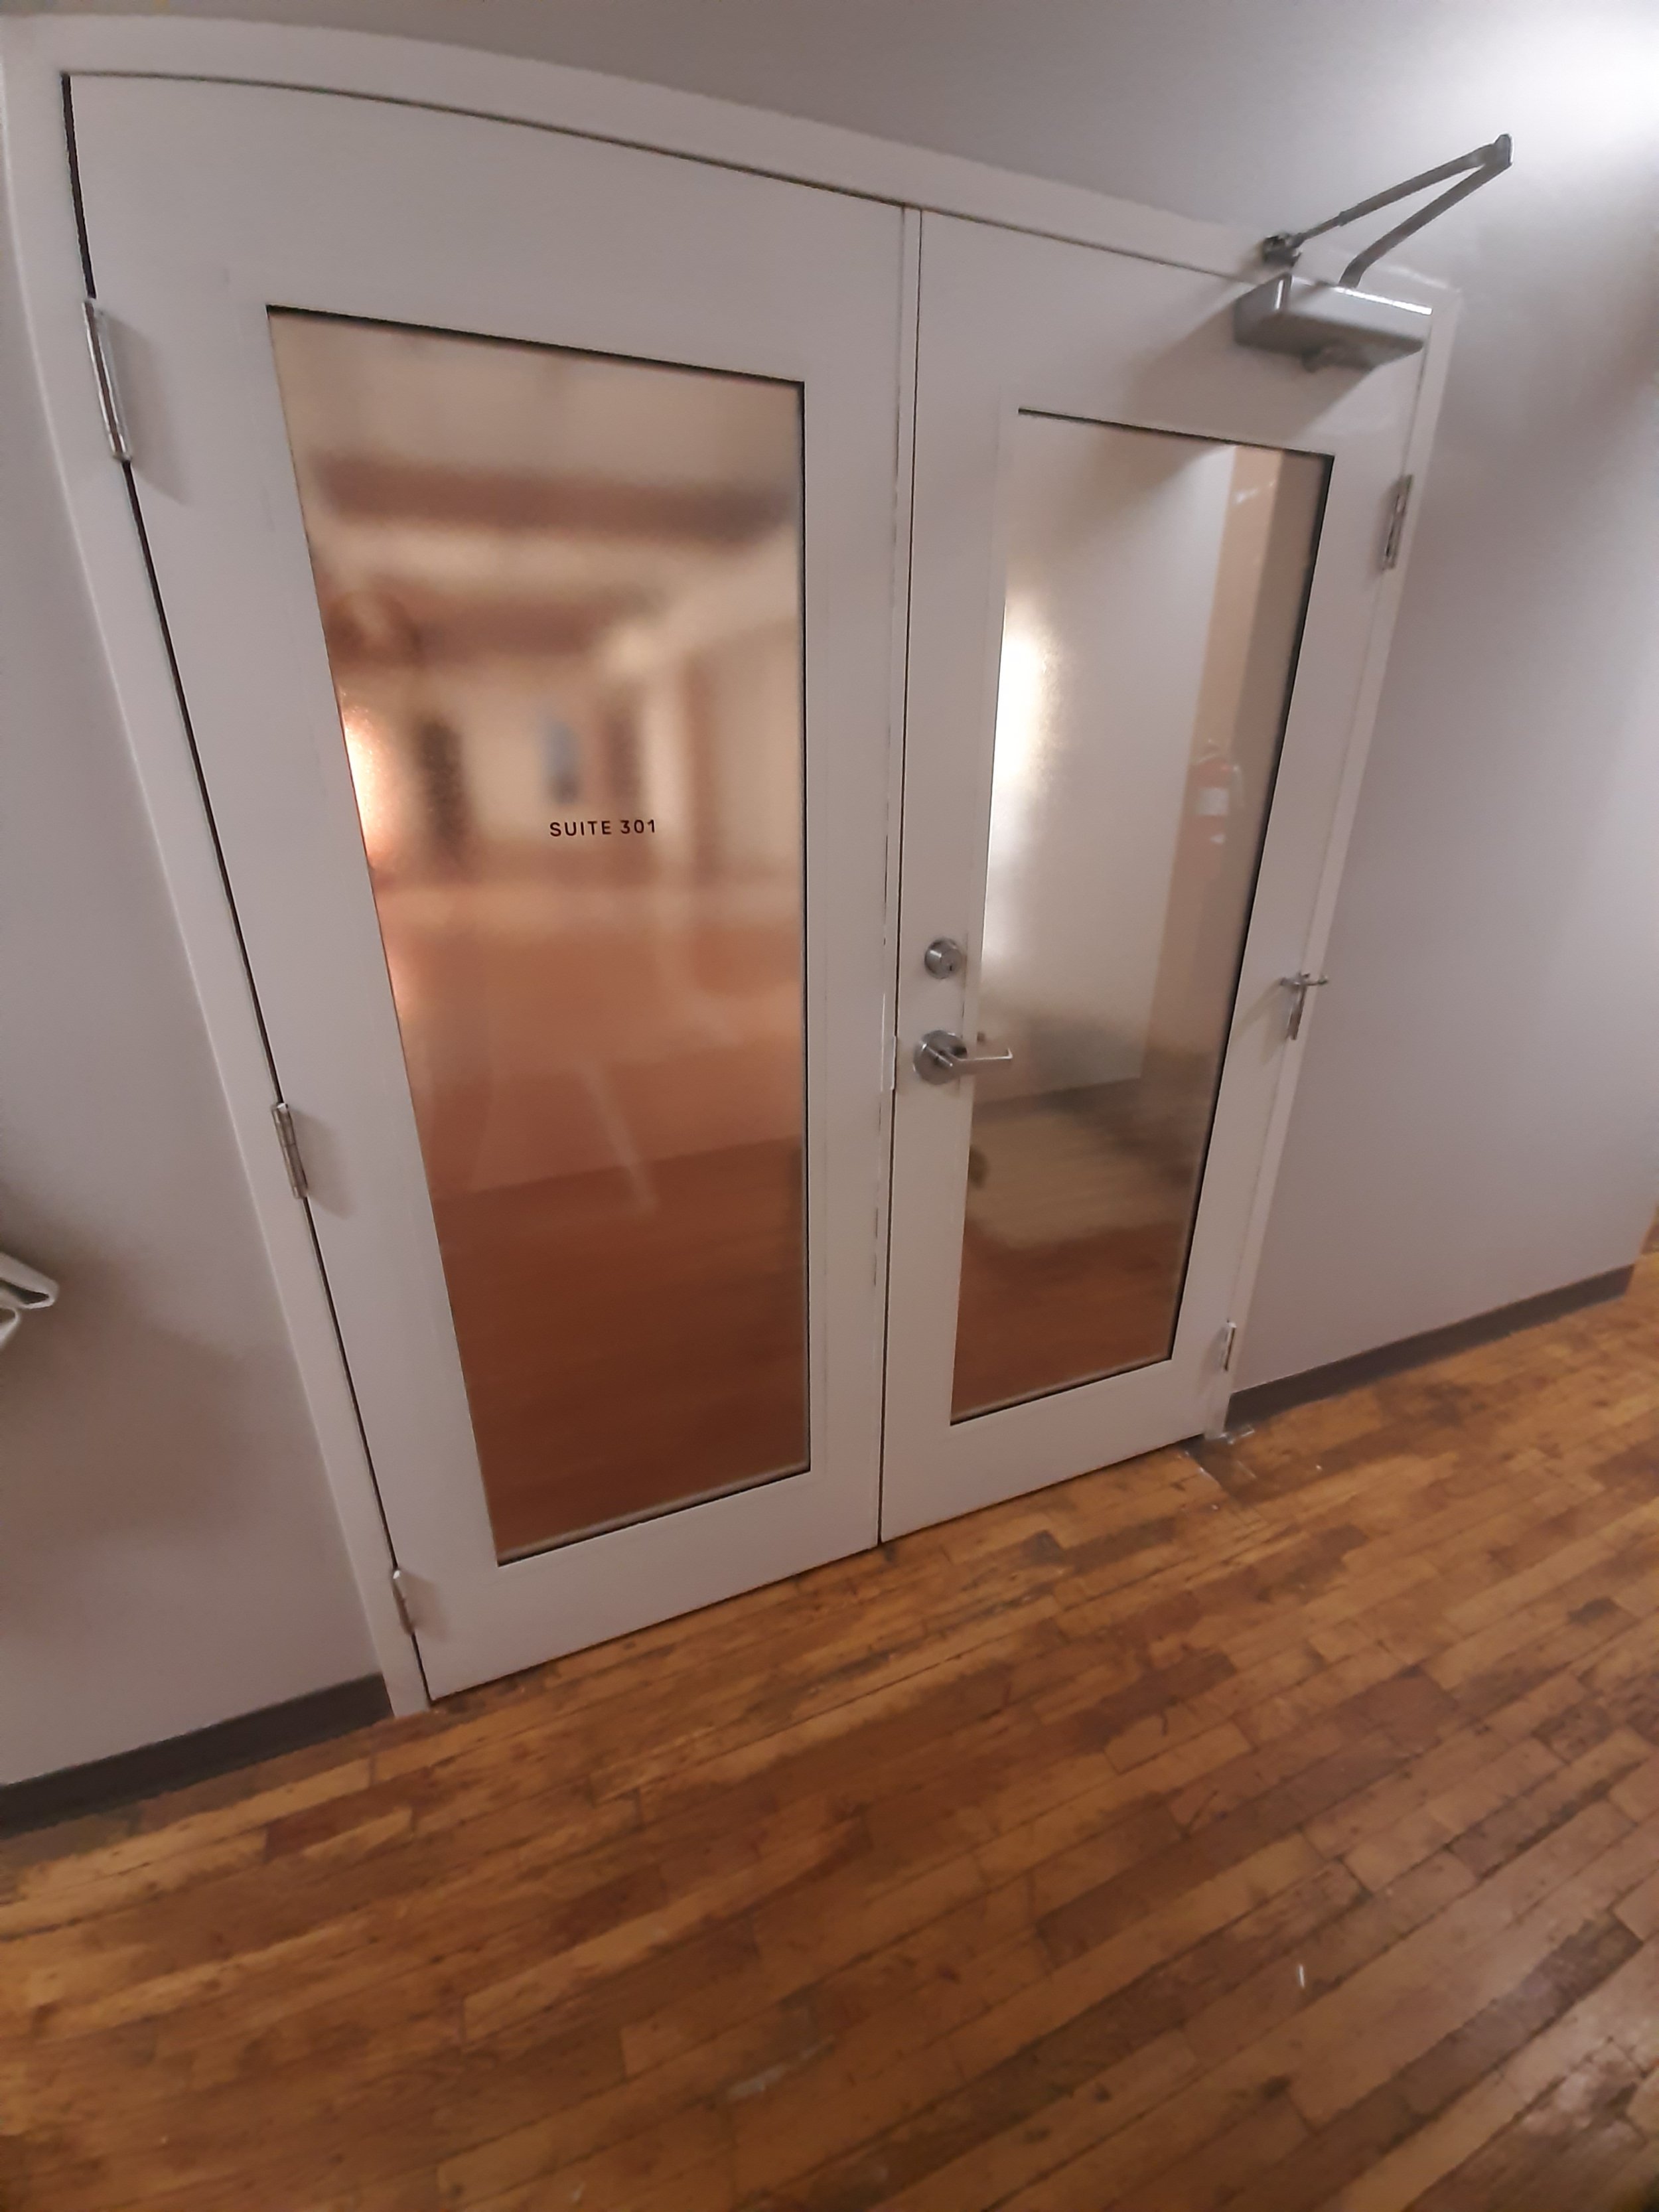 3rd floor entrance doorway unit 301